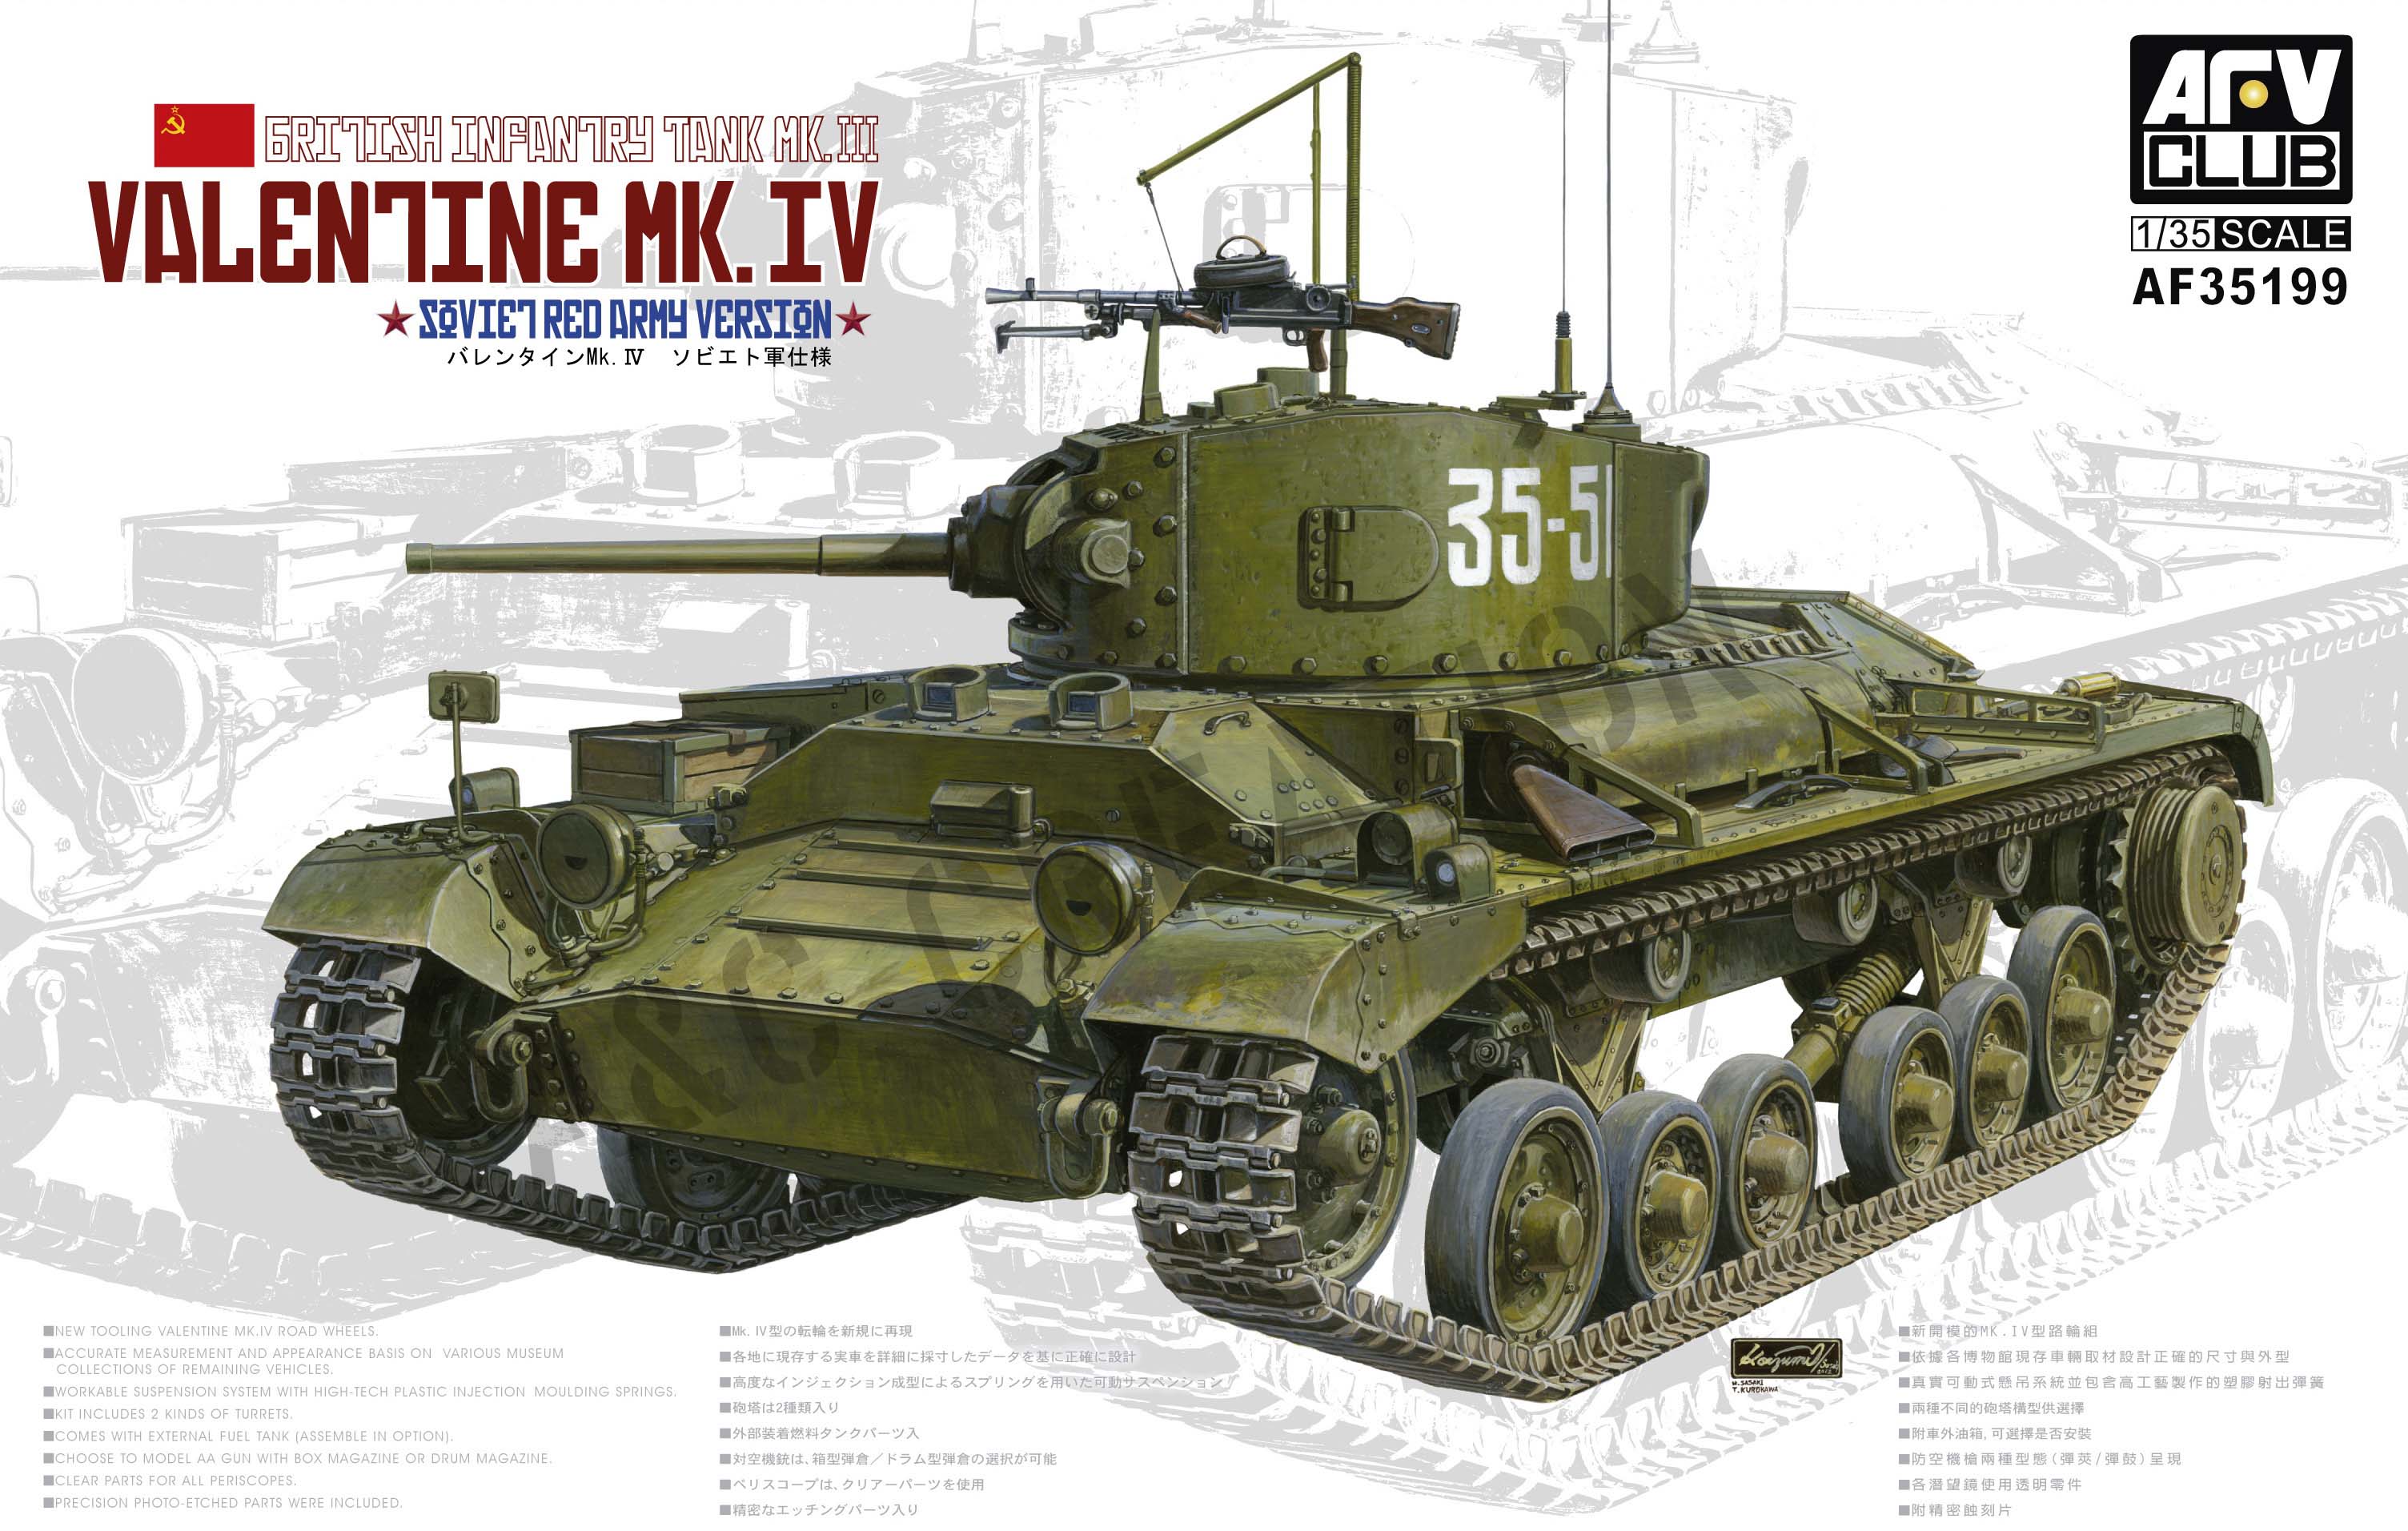 AF35199 British Infantry Tank Mk. III Valentine Mk. IV (Soviet Red Army Version)